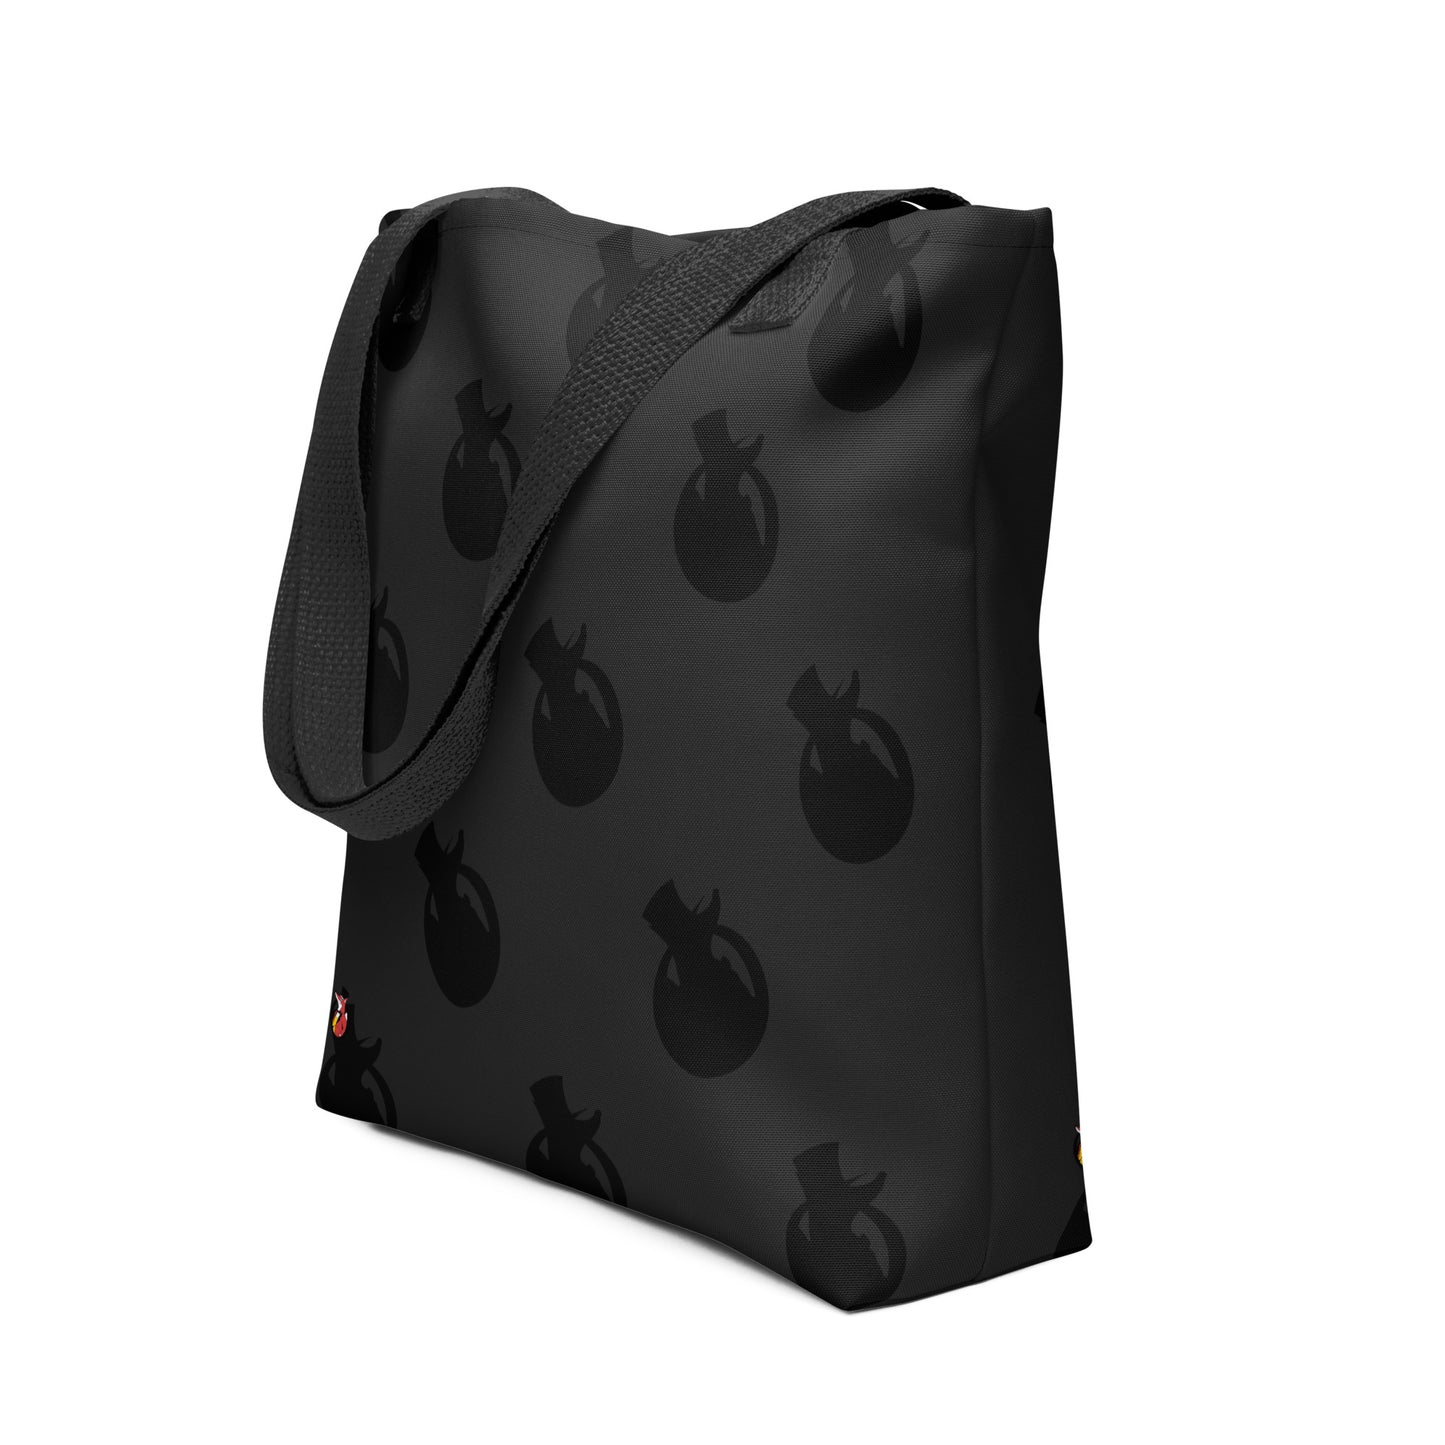 Snooty Fox Art Tote Bag - Snooty Fox Art Logo in Black